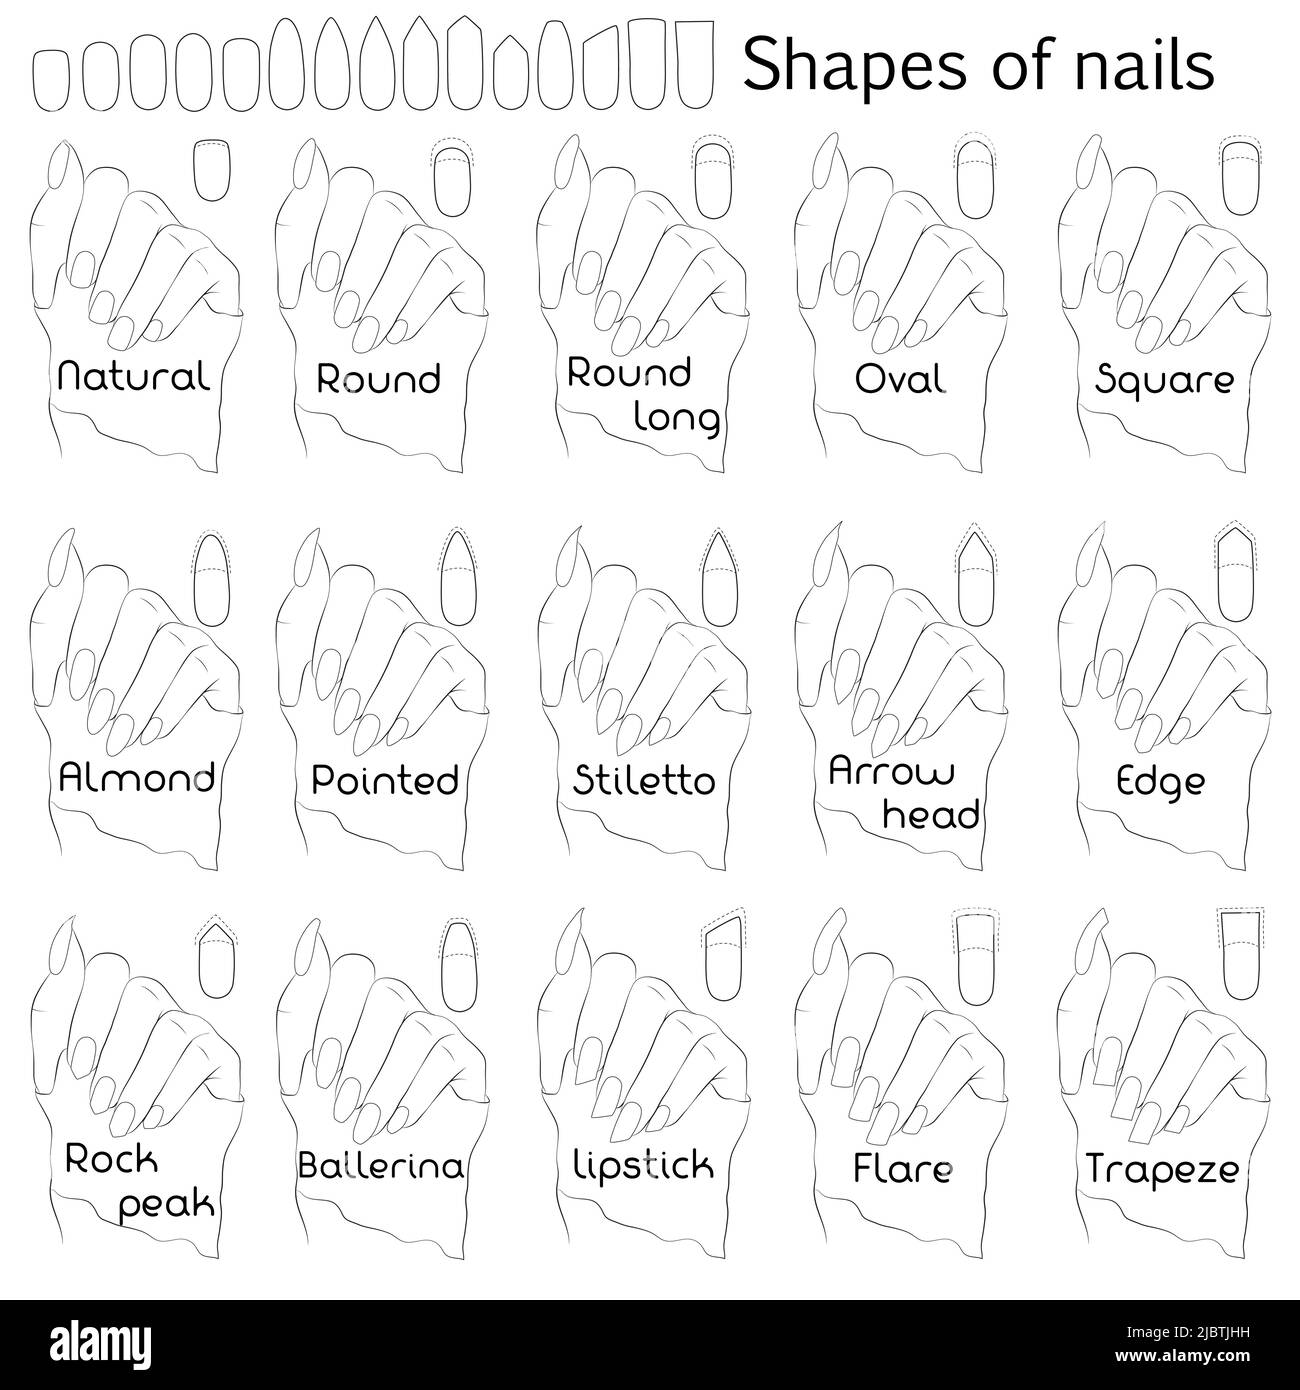 Forme di unghie. Illustrazione in bianco e nero per manicure professionale con nomi di forme. La differenza e la similarità delle forme sull'esempio di Illustrazione Vettoriale